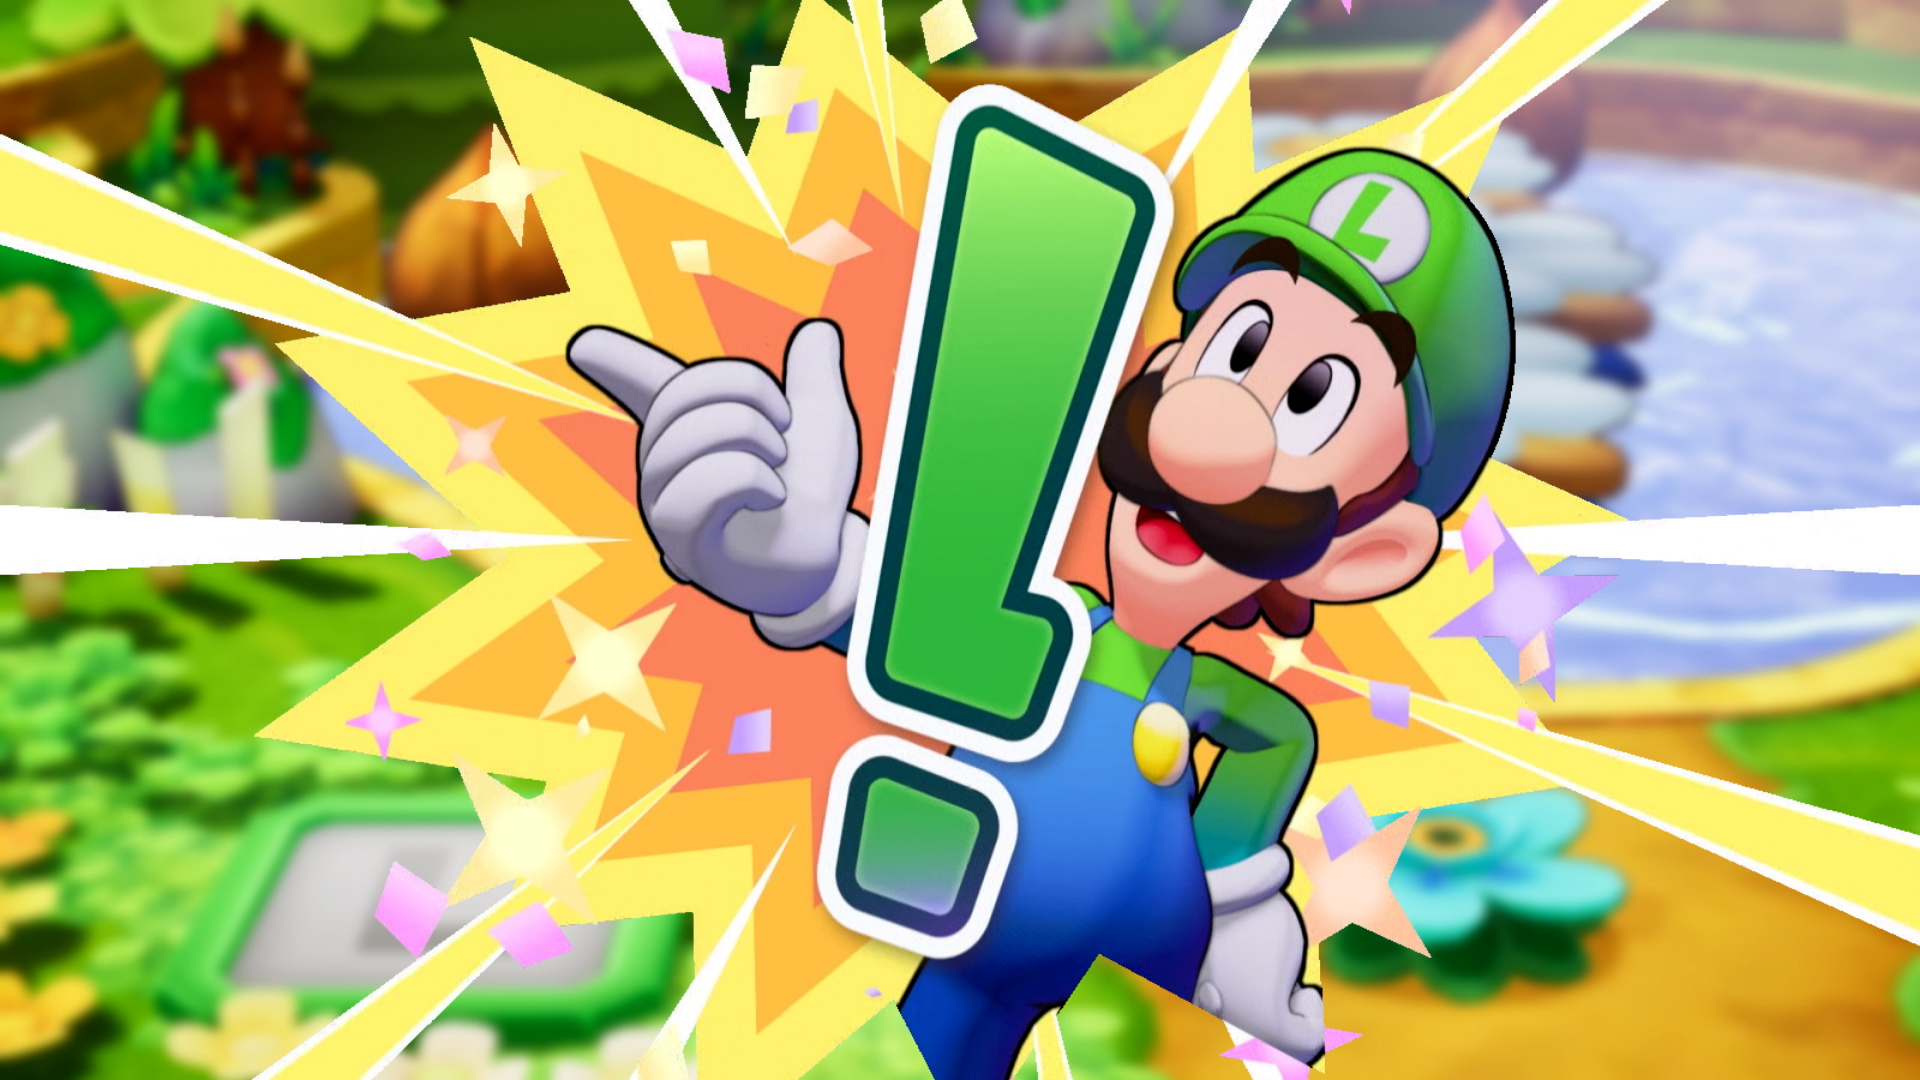 Mario et luigi l epopee fraternelle screenshot 5 5